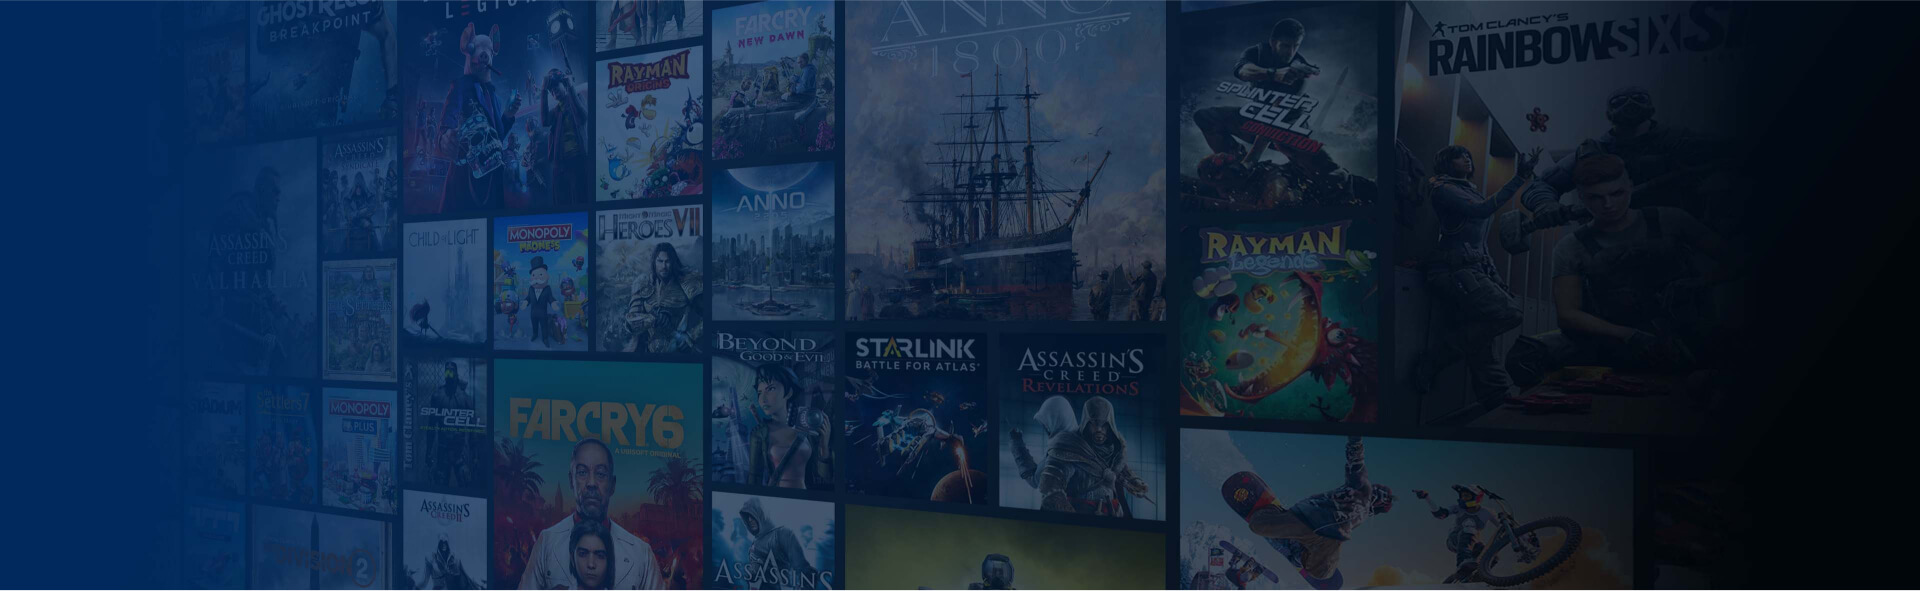 Mozaïek dat de bibliotheek met games vertegenwoordigt die beschikbaar zijn in het Ubisoft+ abonnement